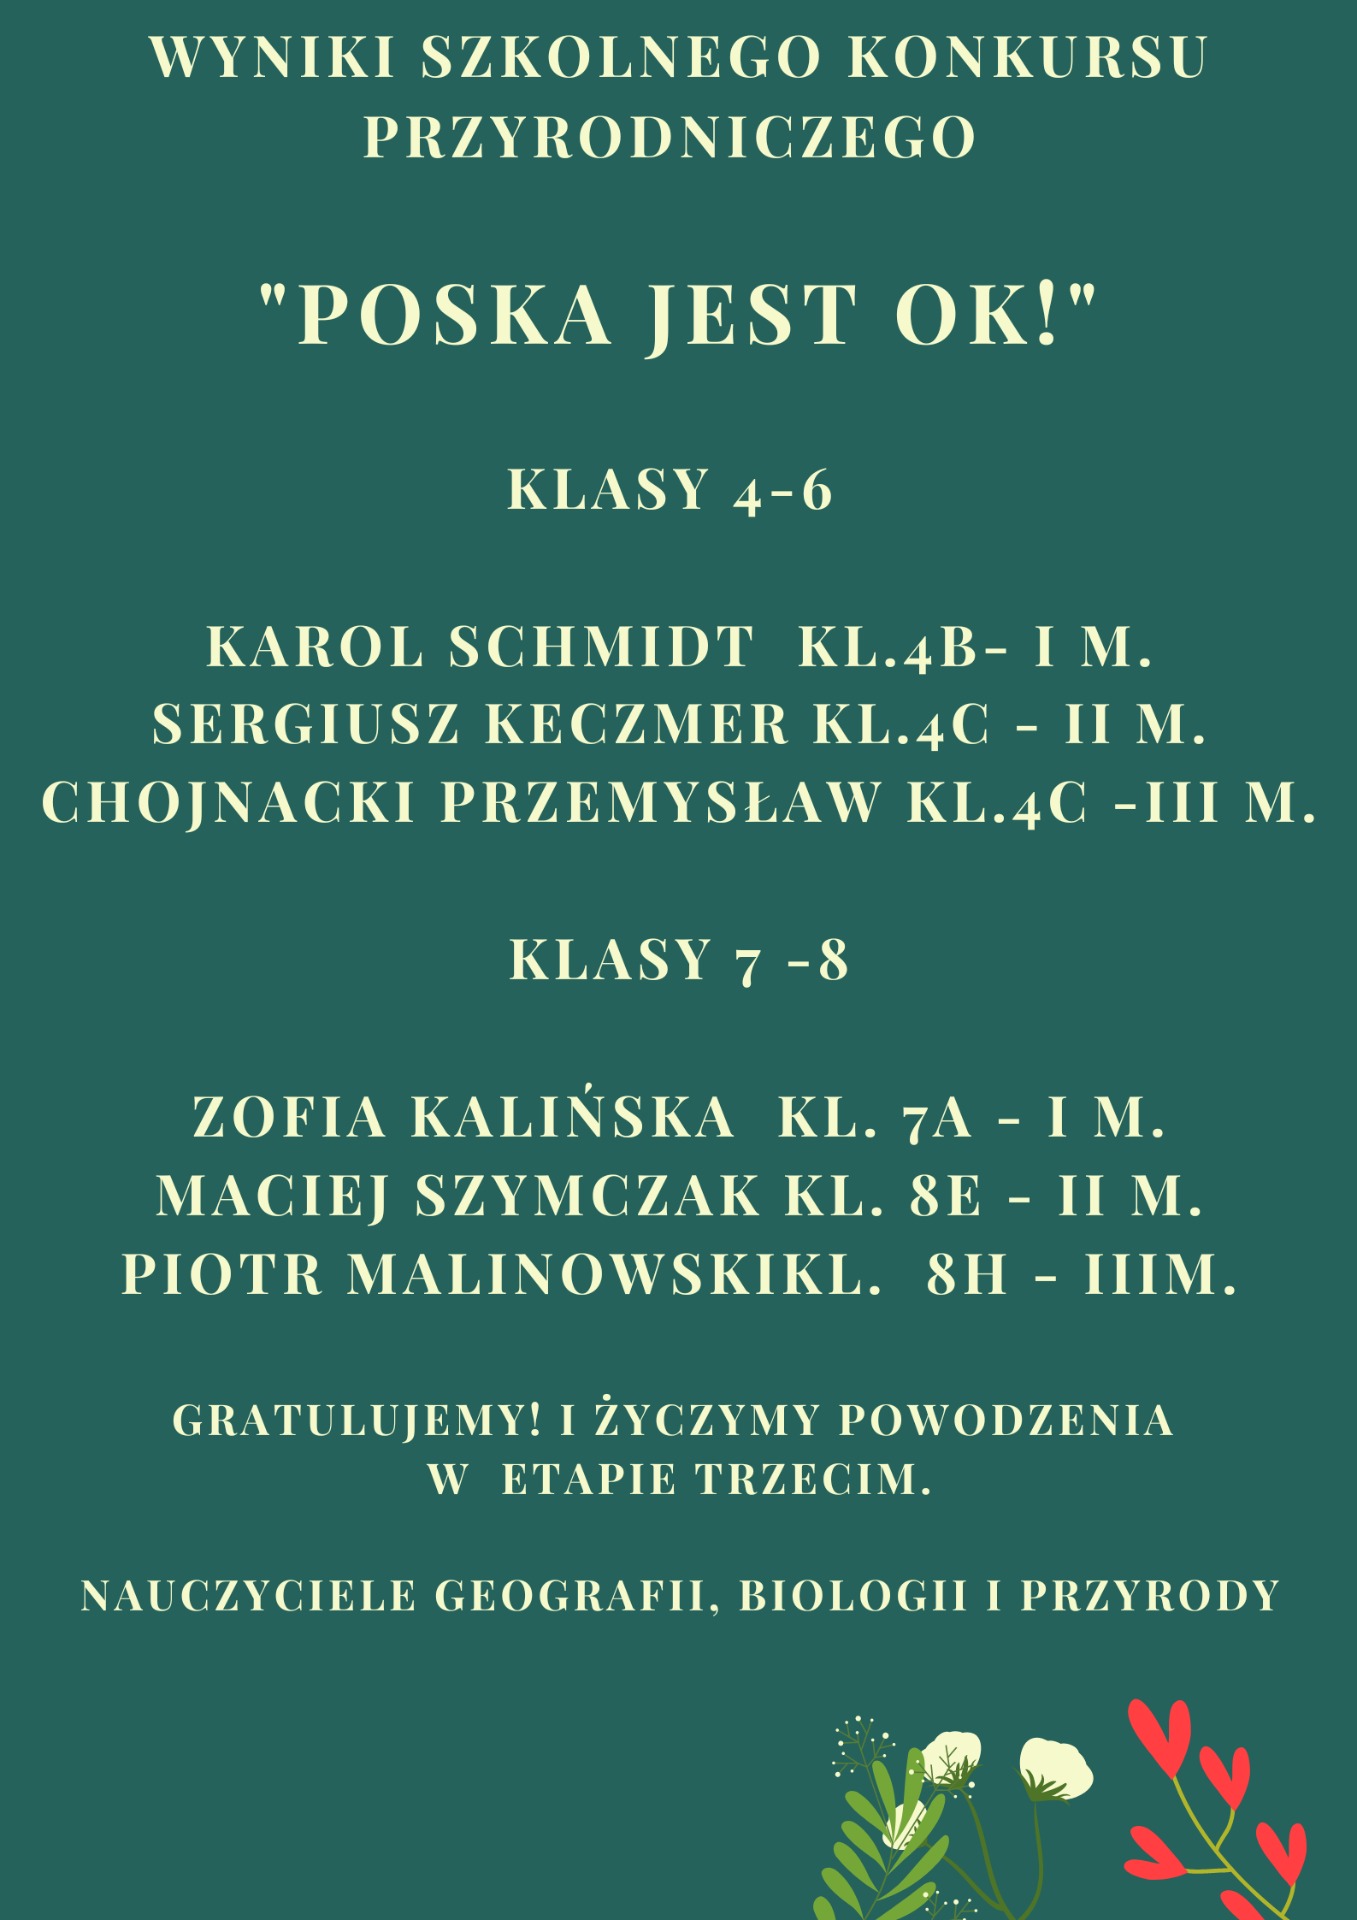 Wyniki Szkolnego Konkursu Przyrodniczego "Polska jest OK!" - Obrazek 1